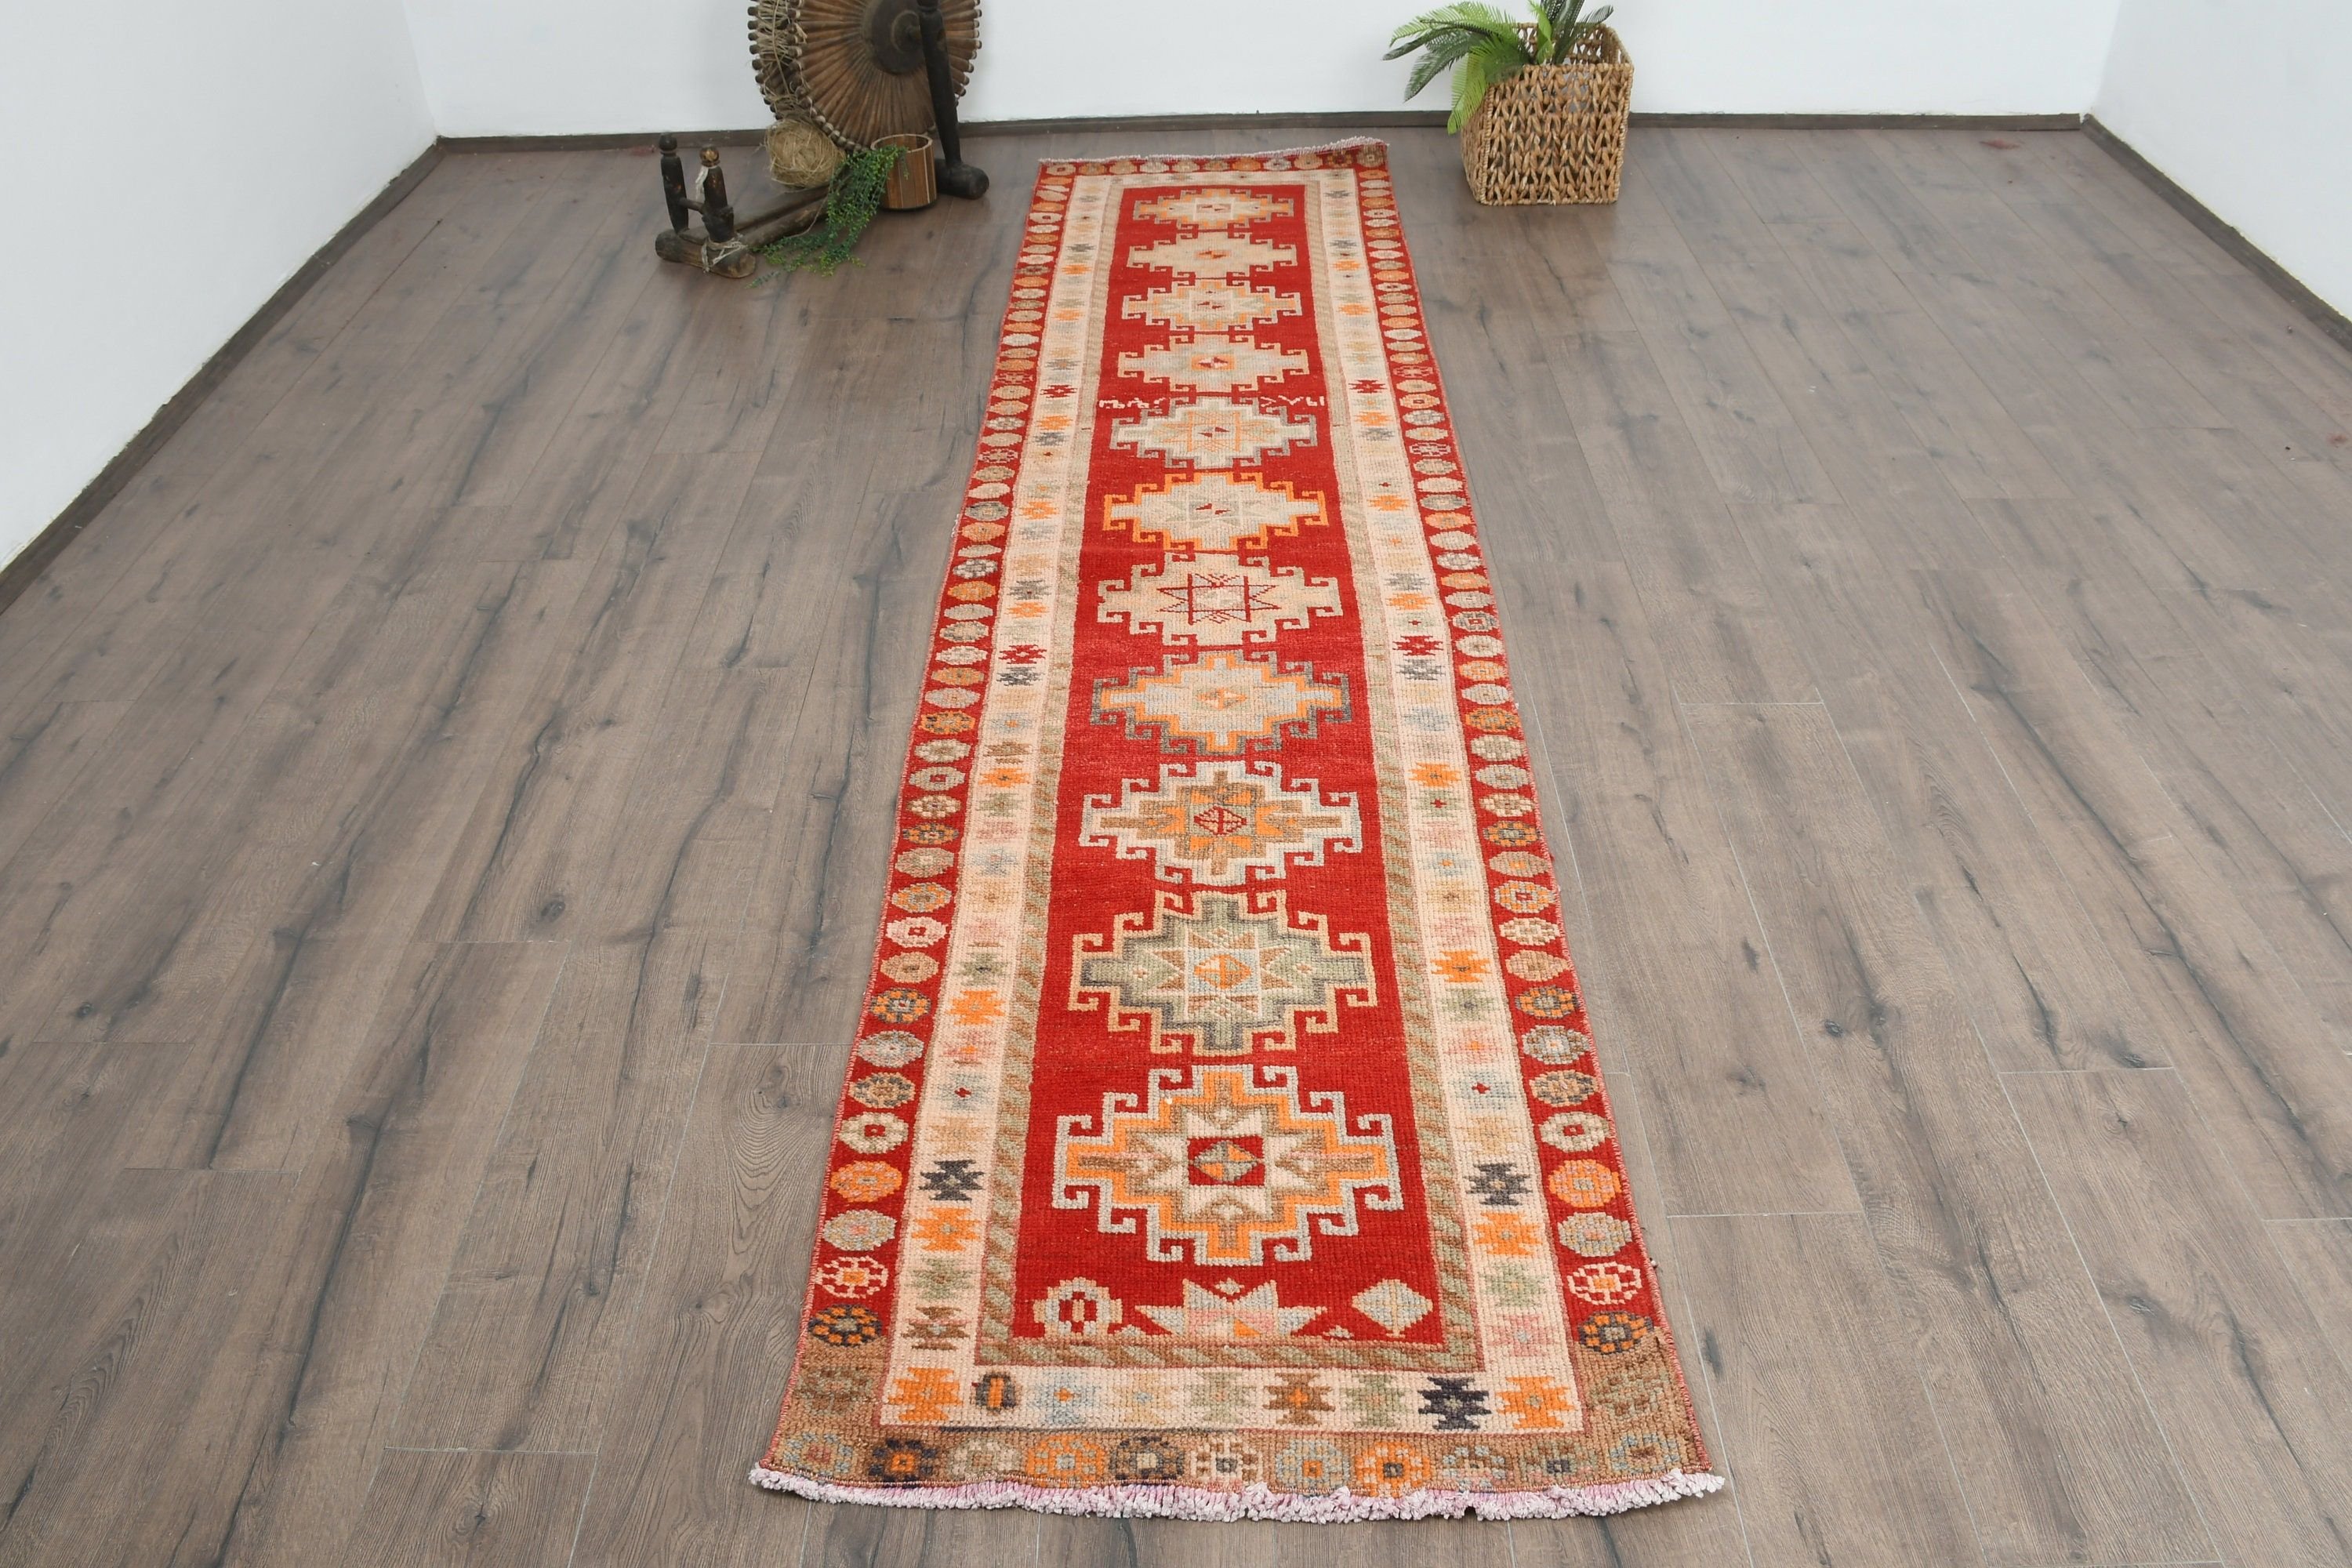 Oriental Rug, Hallway Rugs, Aesthetic Rug, Stair Rug, Moroccan Rug, 2.6x10.7 ft Runner Rug, Red Home Decor Rugs, Turkish Rug, Vintage Rug